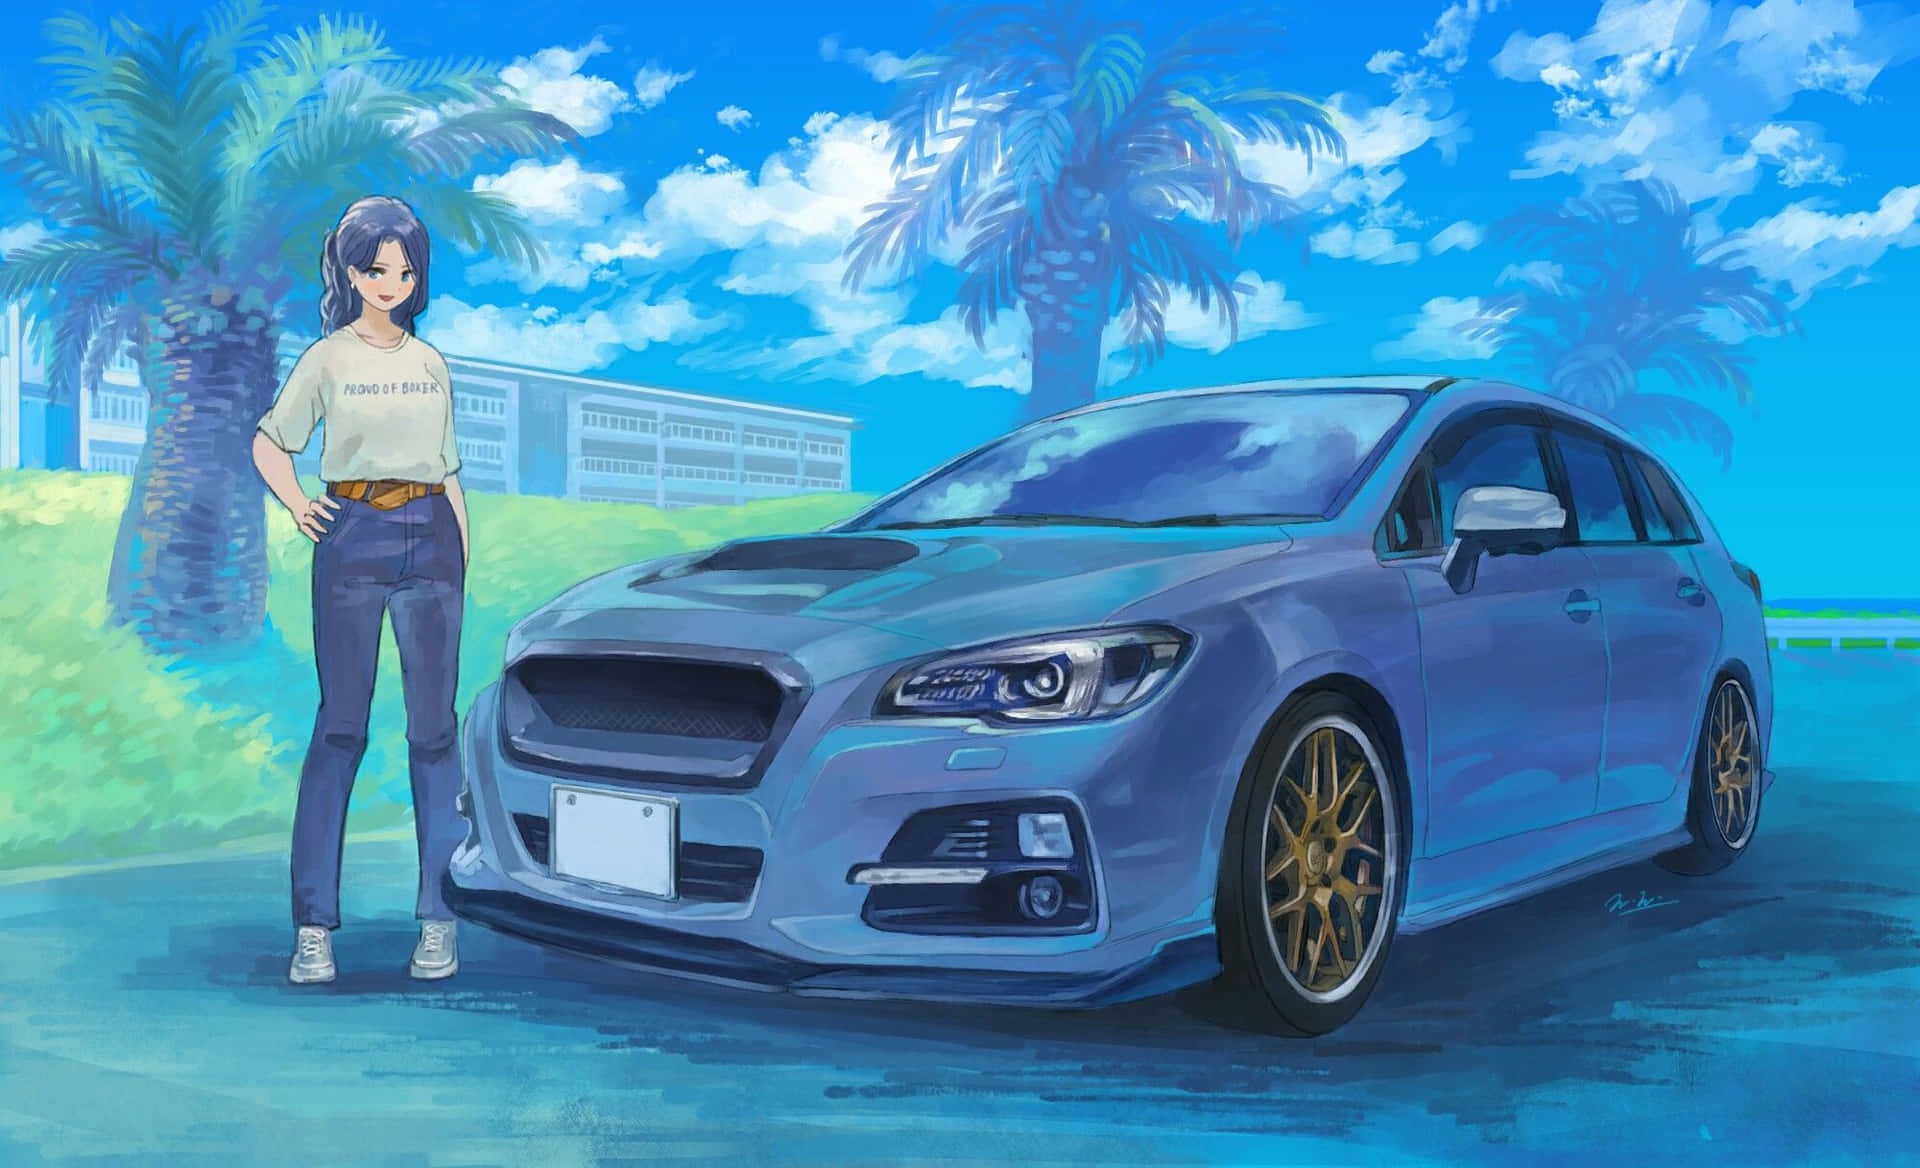 Følsuset Af Anime-stilen I Dette Tætpå-billede Af En Anime-bil.